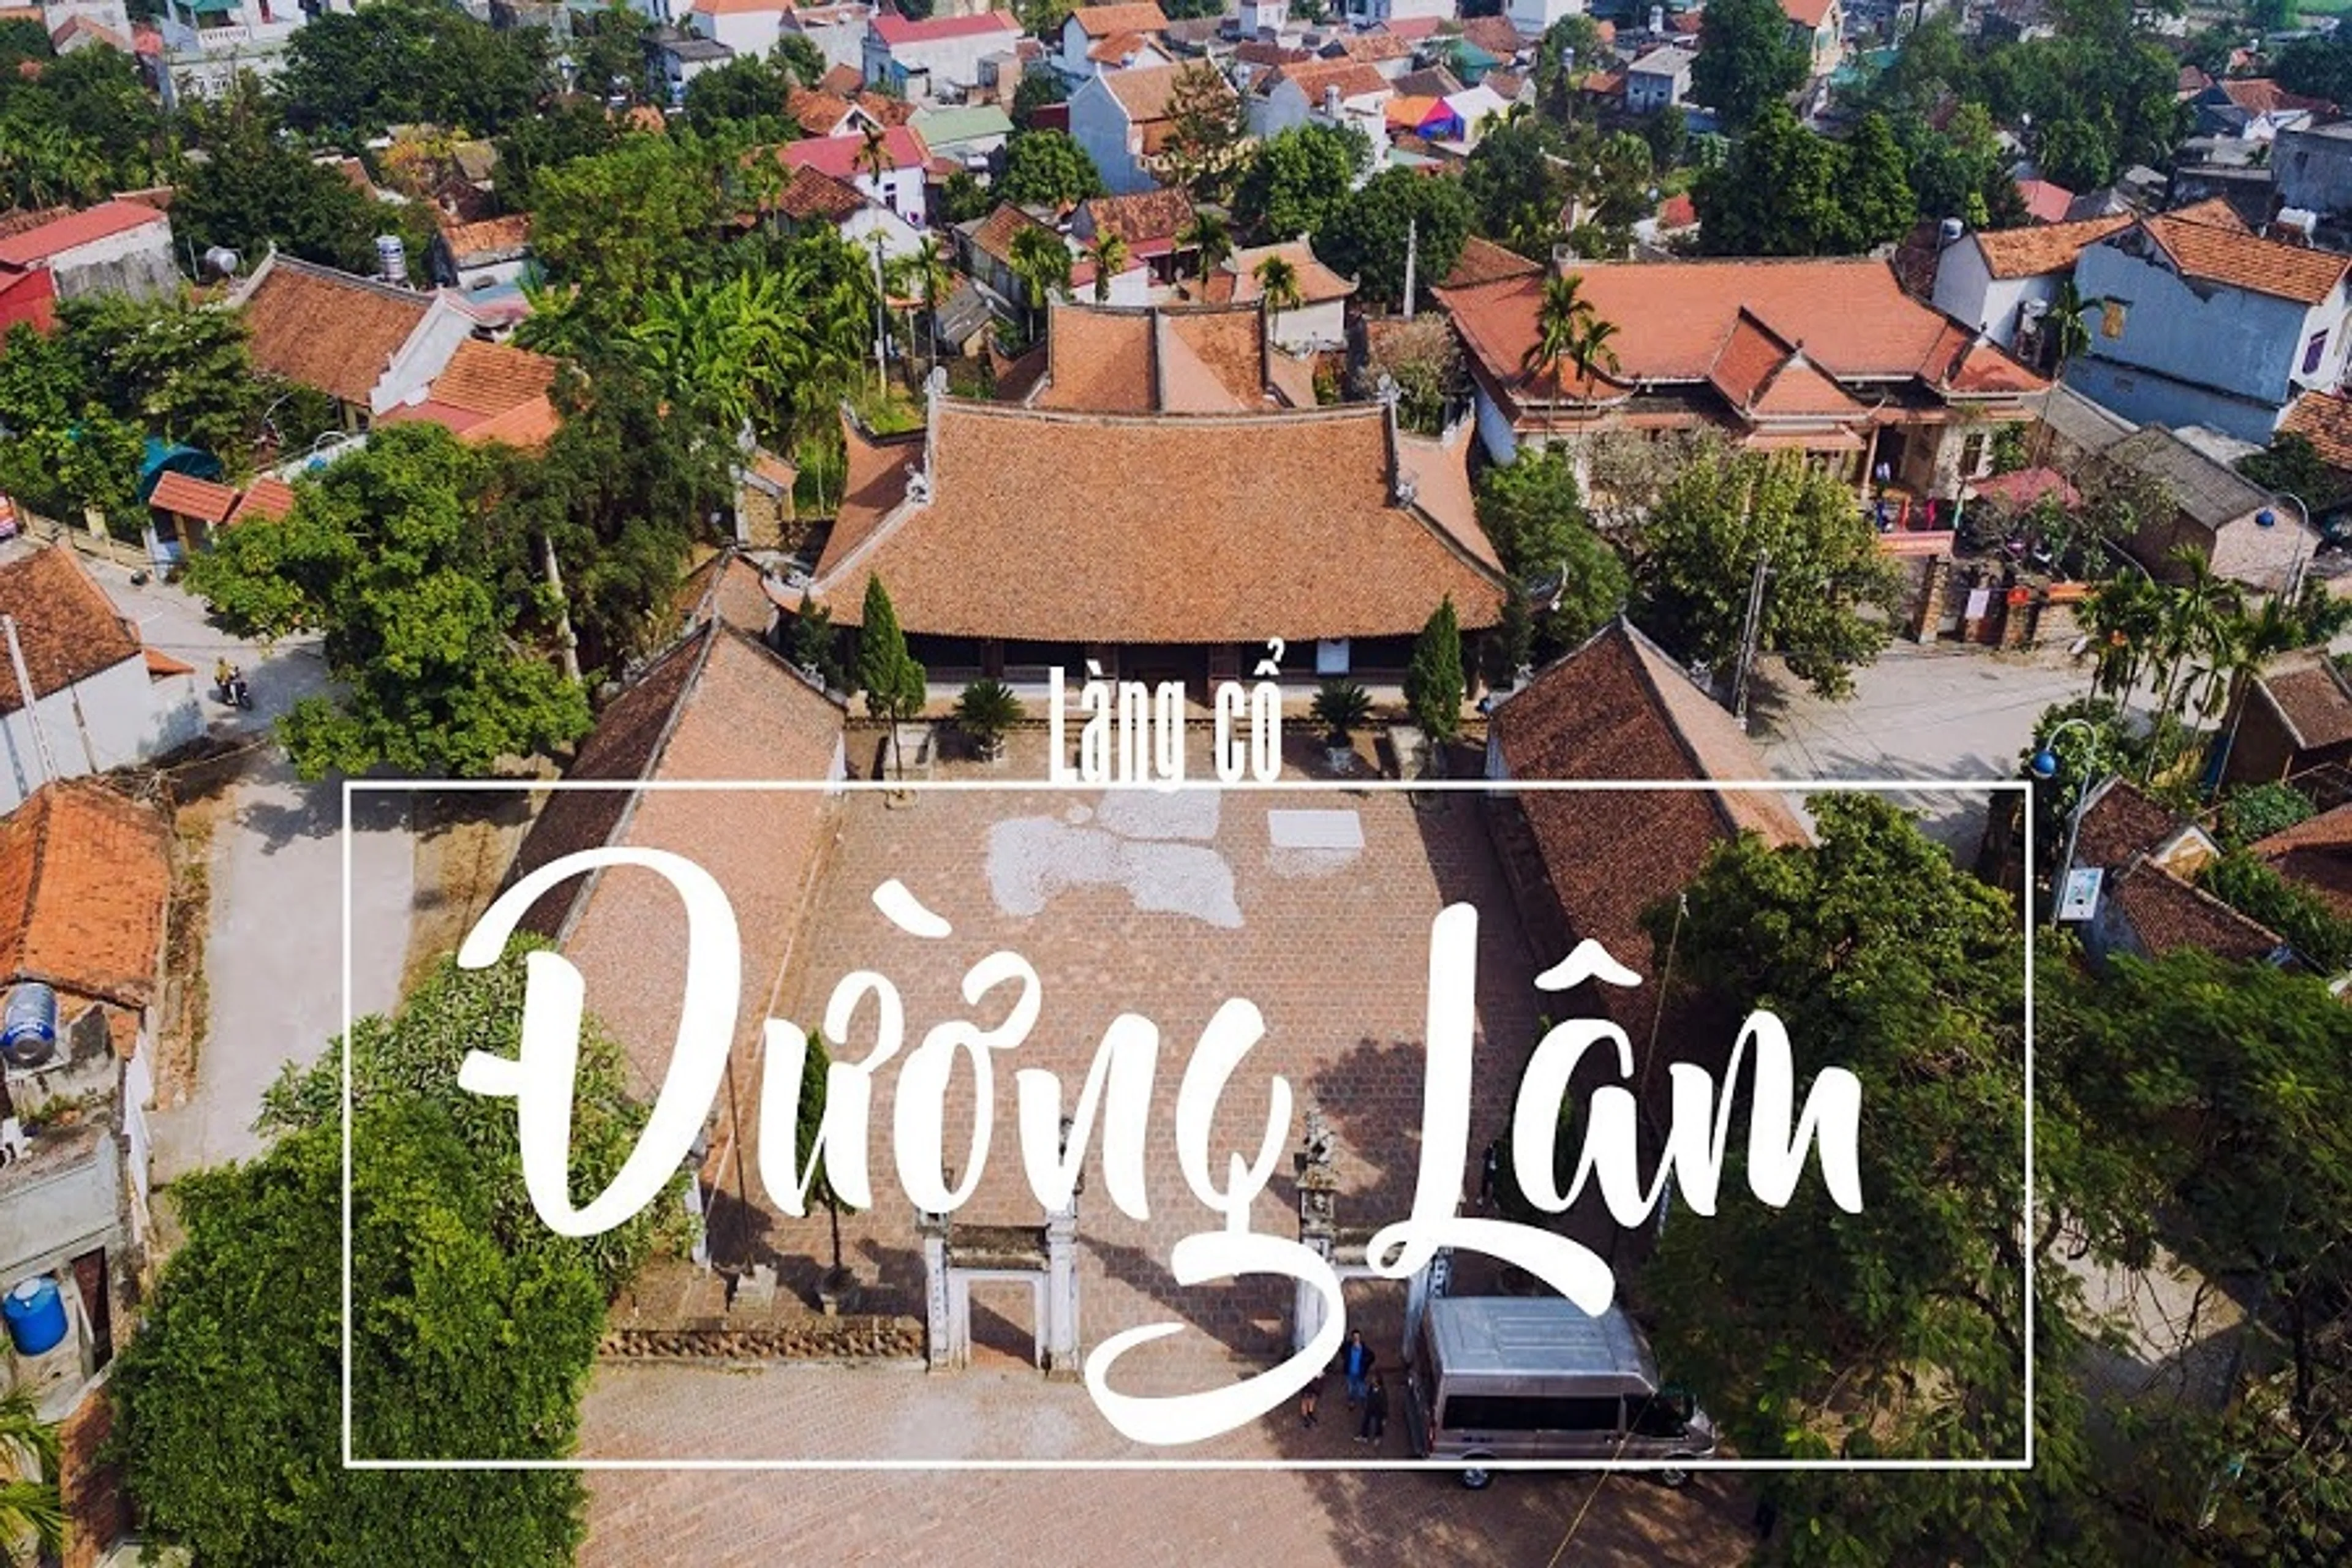 Vietnam Traditional villages tour - (Bat Trang & Duong Lam village)